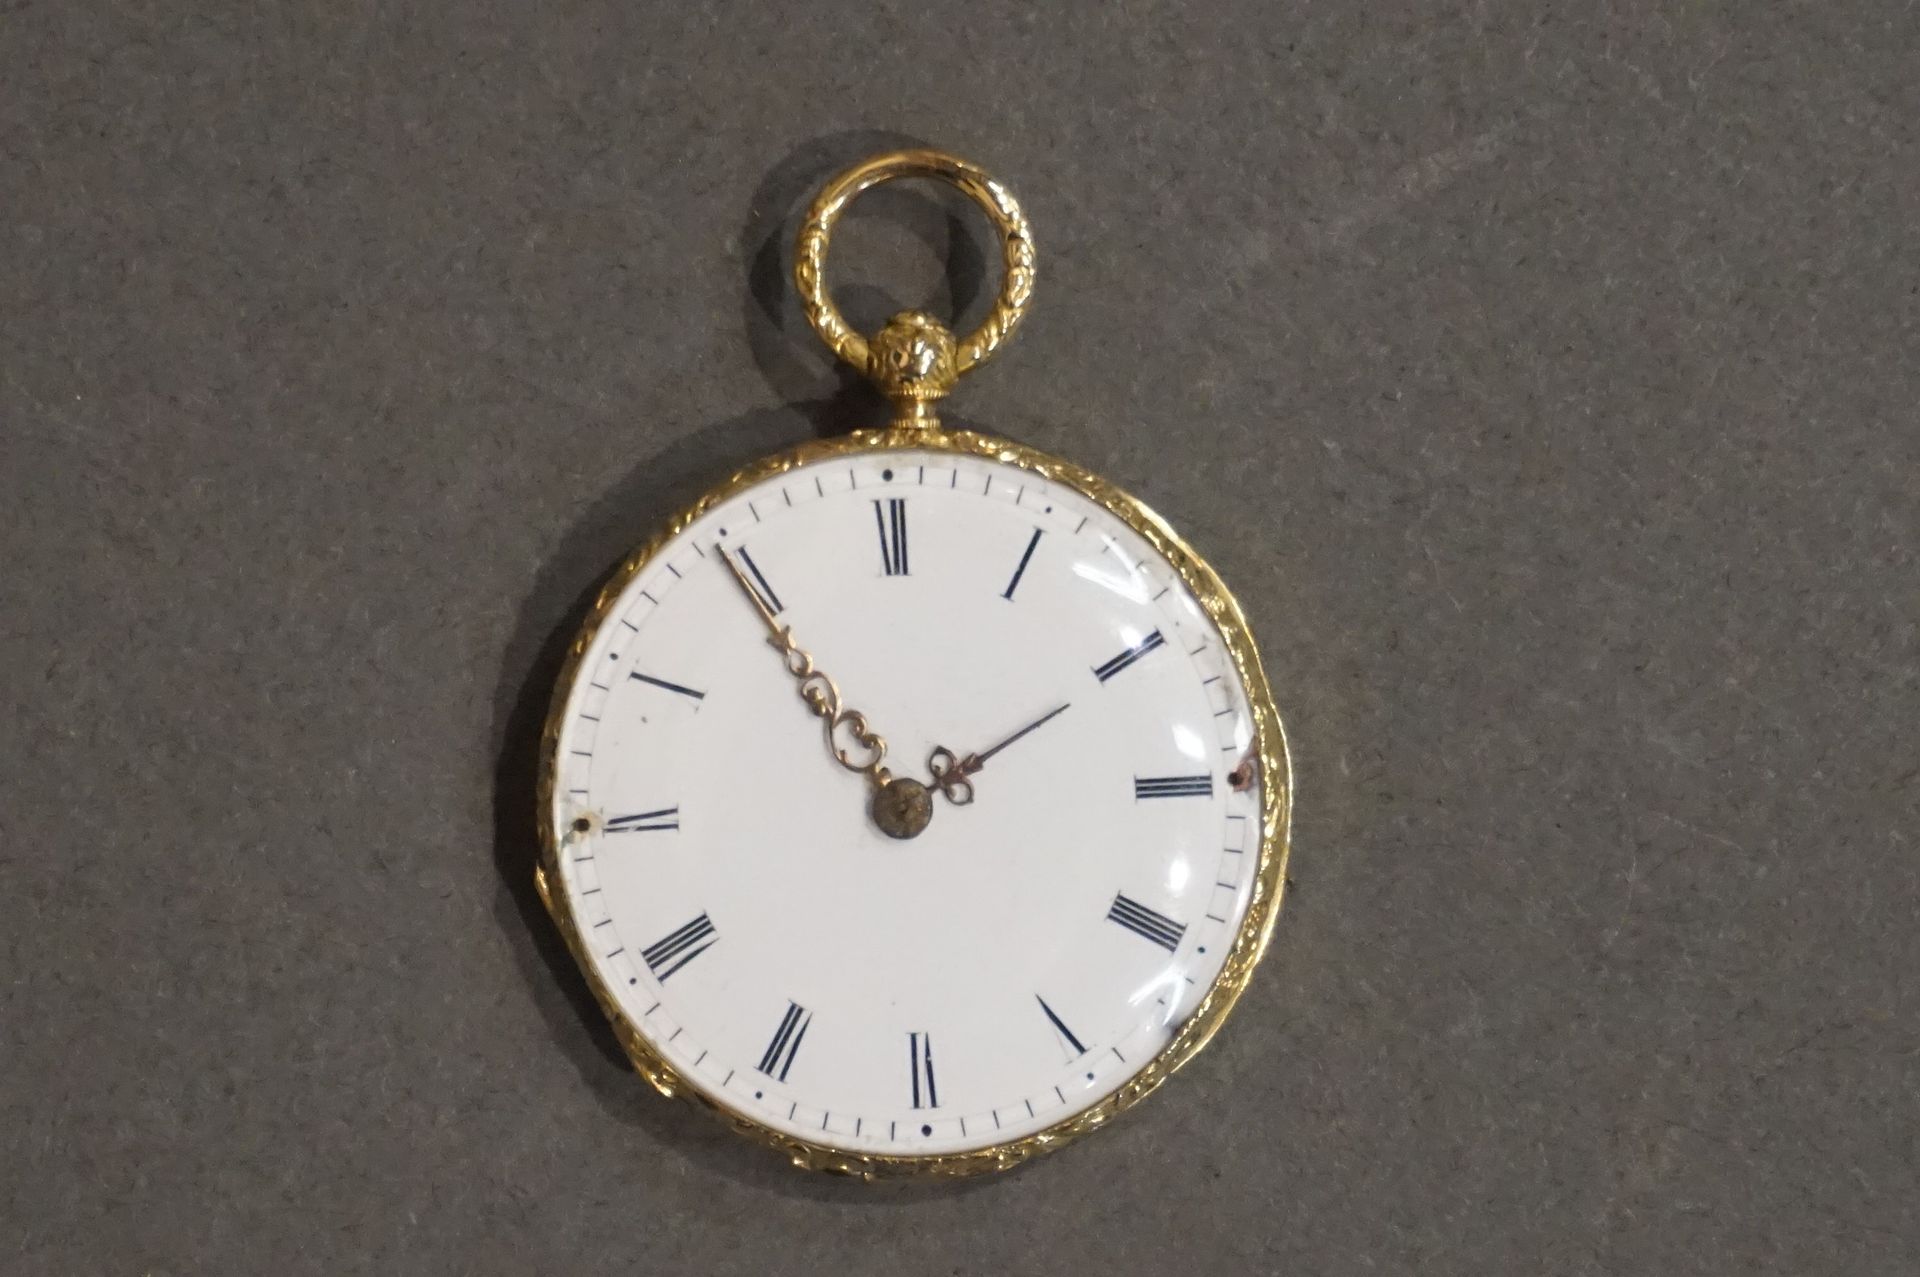 Montre de col Orologio con collare guilloché in oro (peso lordo: 21 gr)